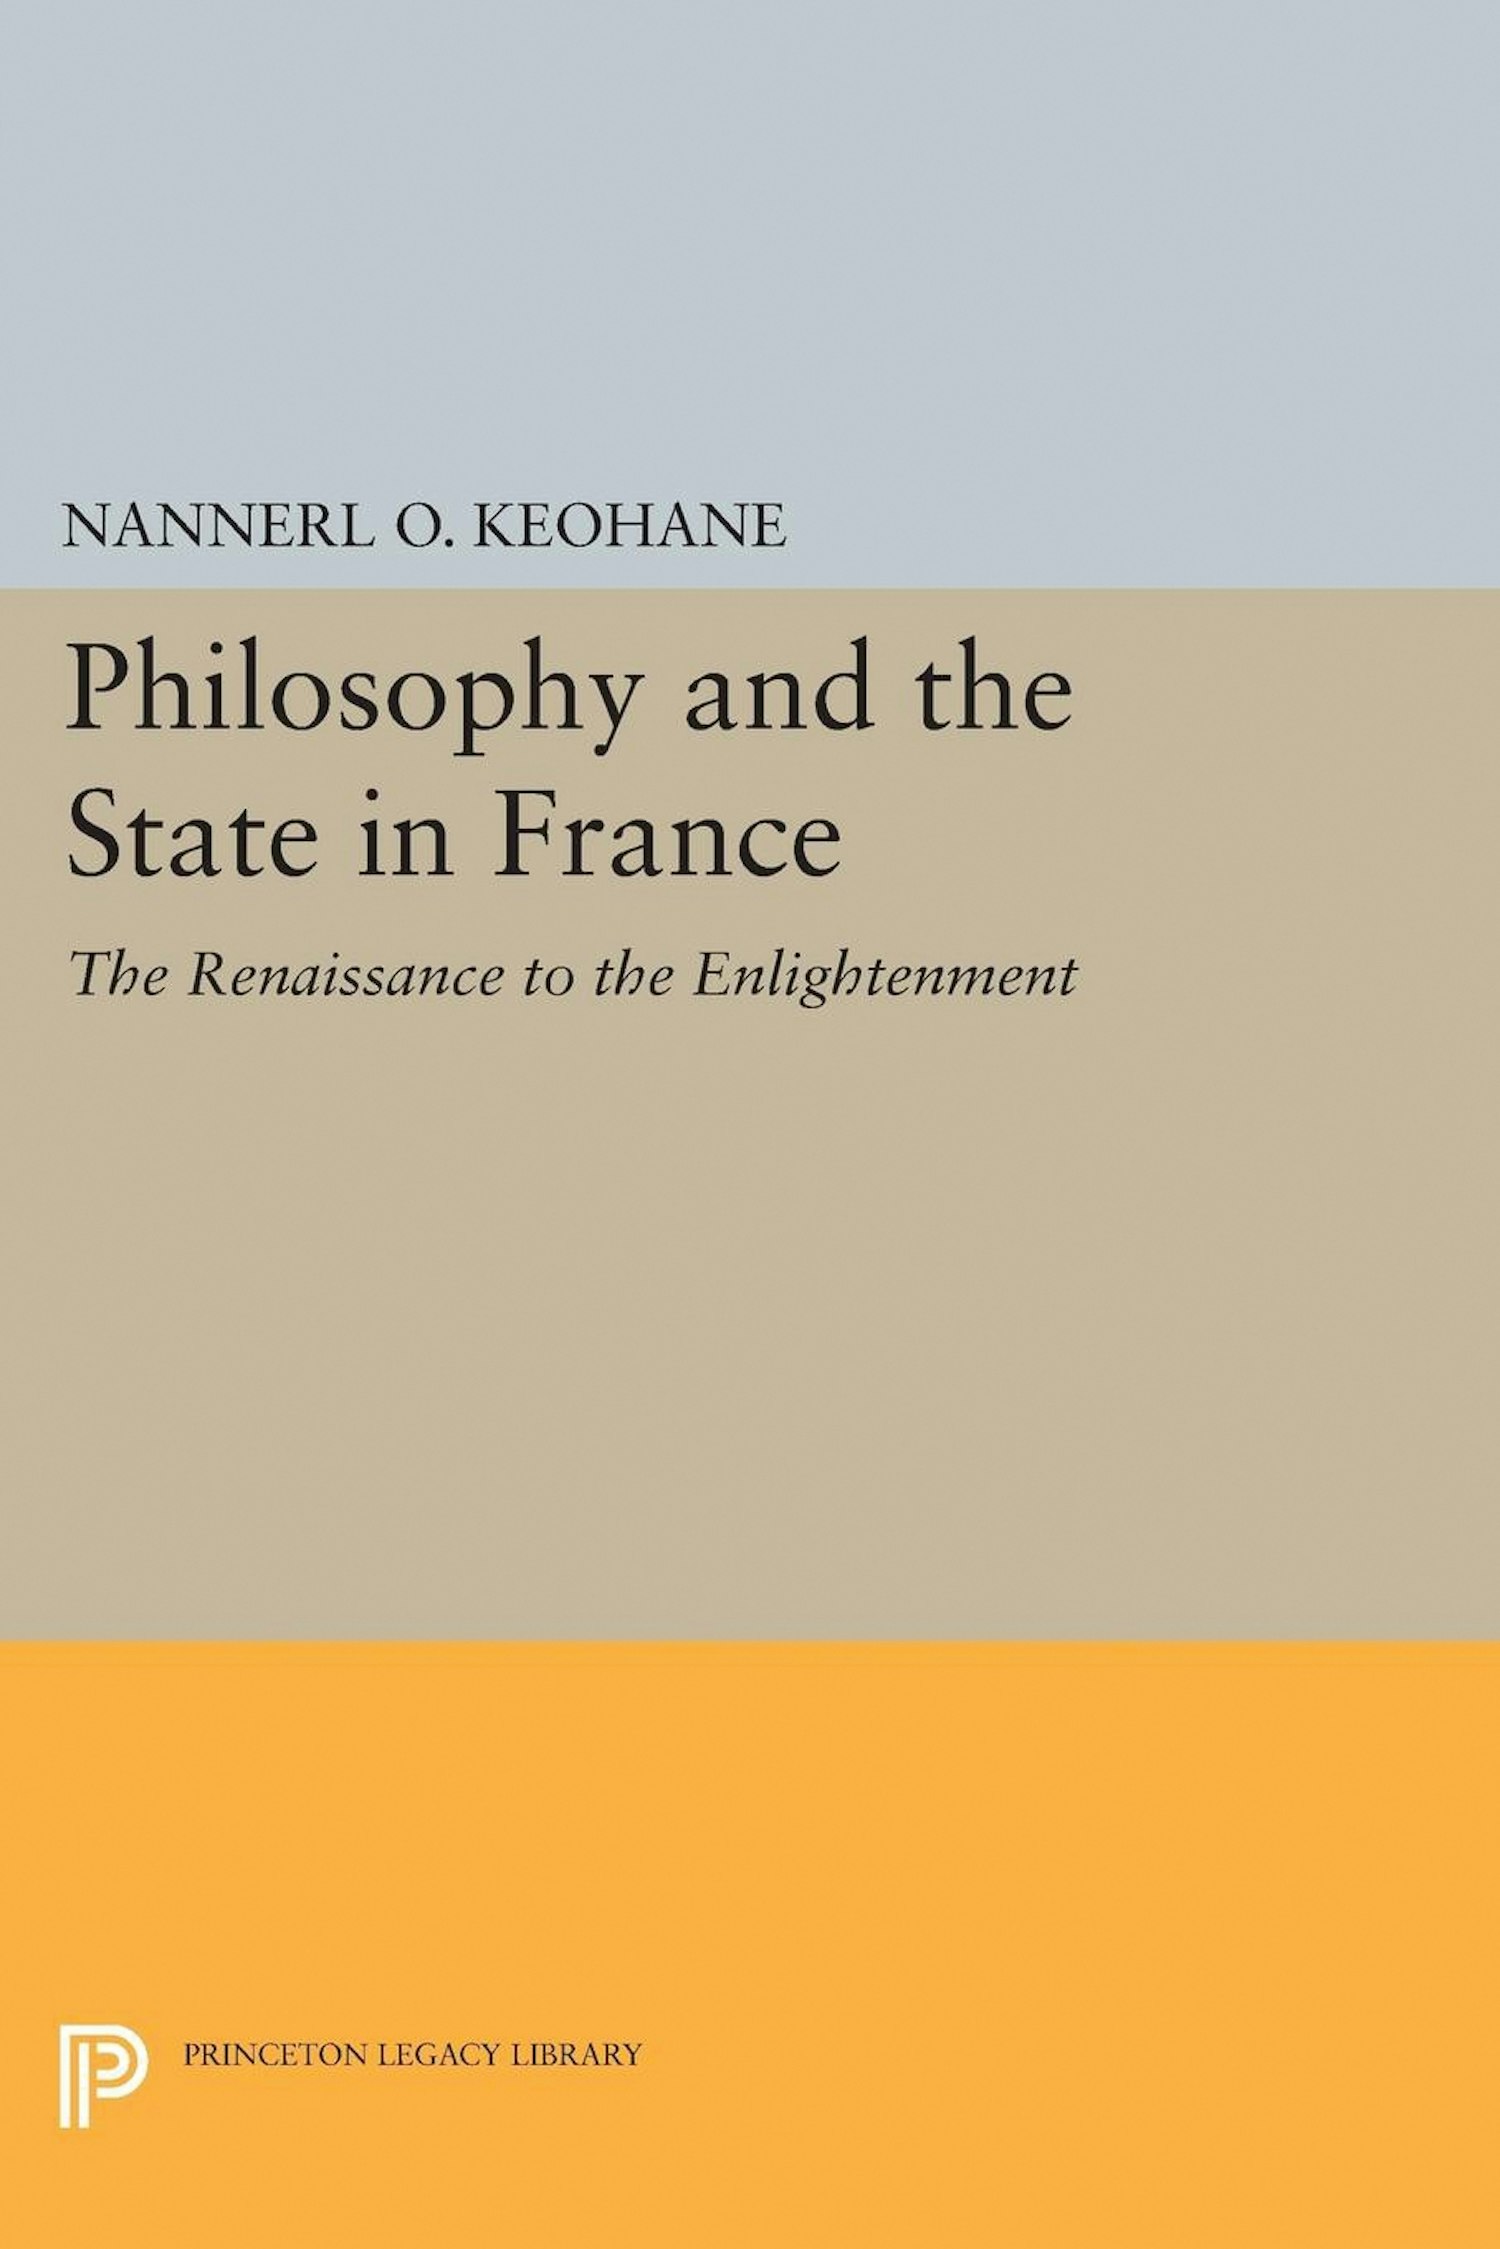 phd in philosophy in france